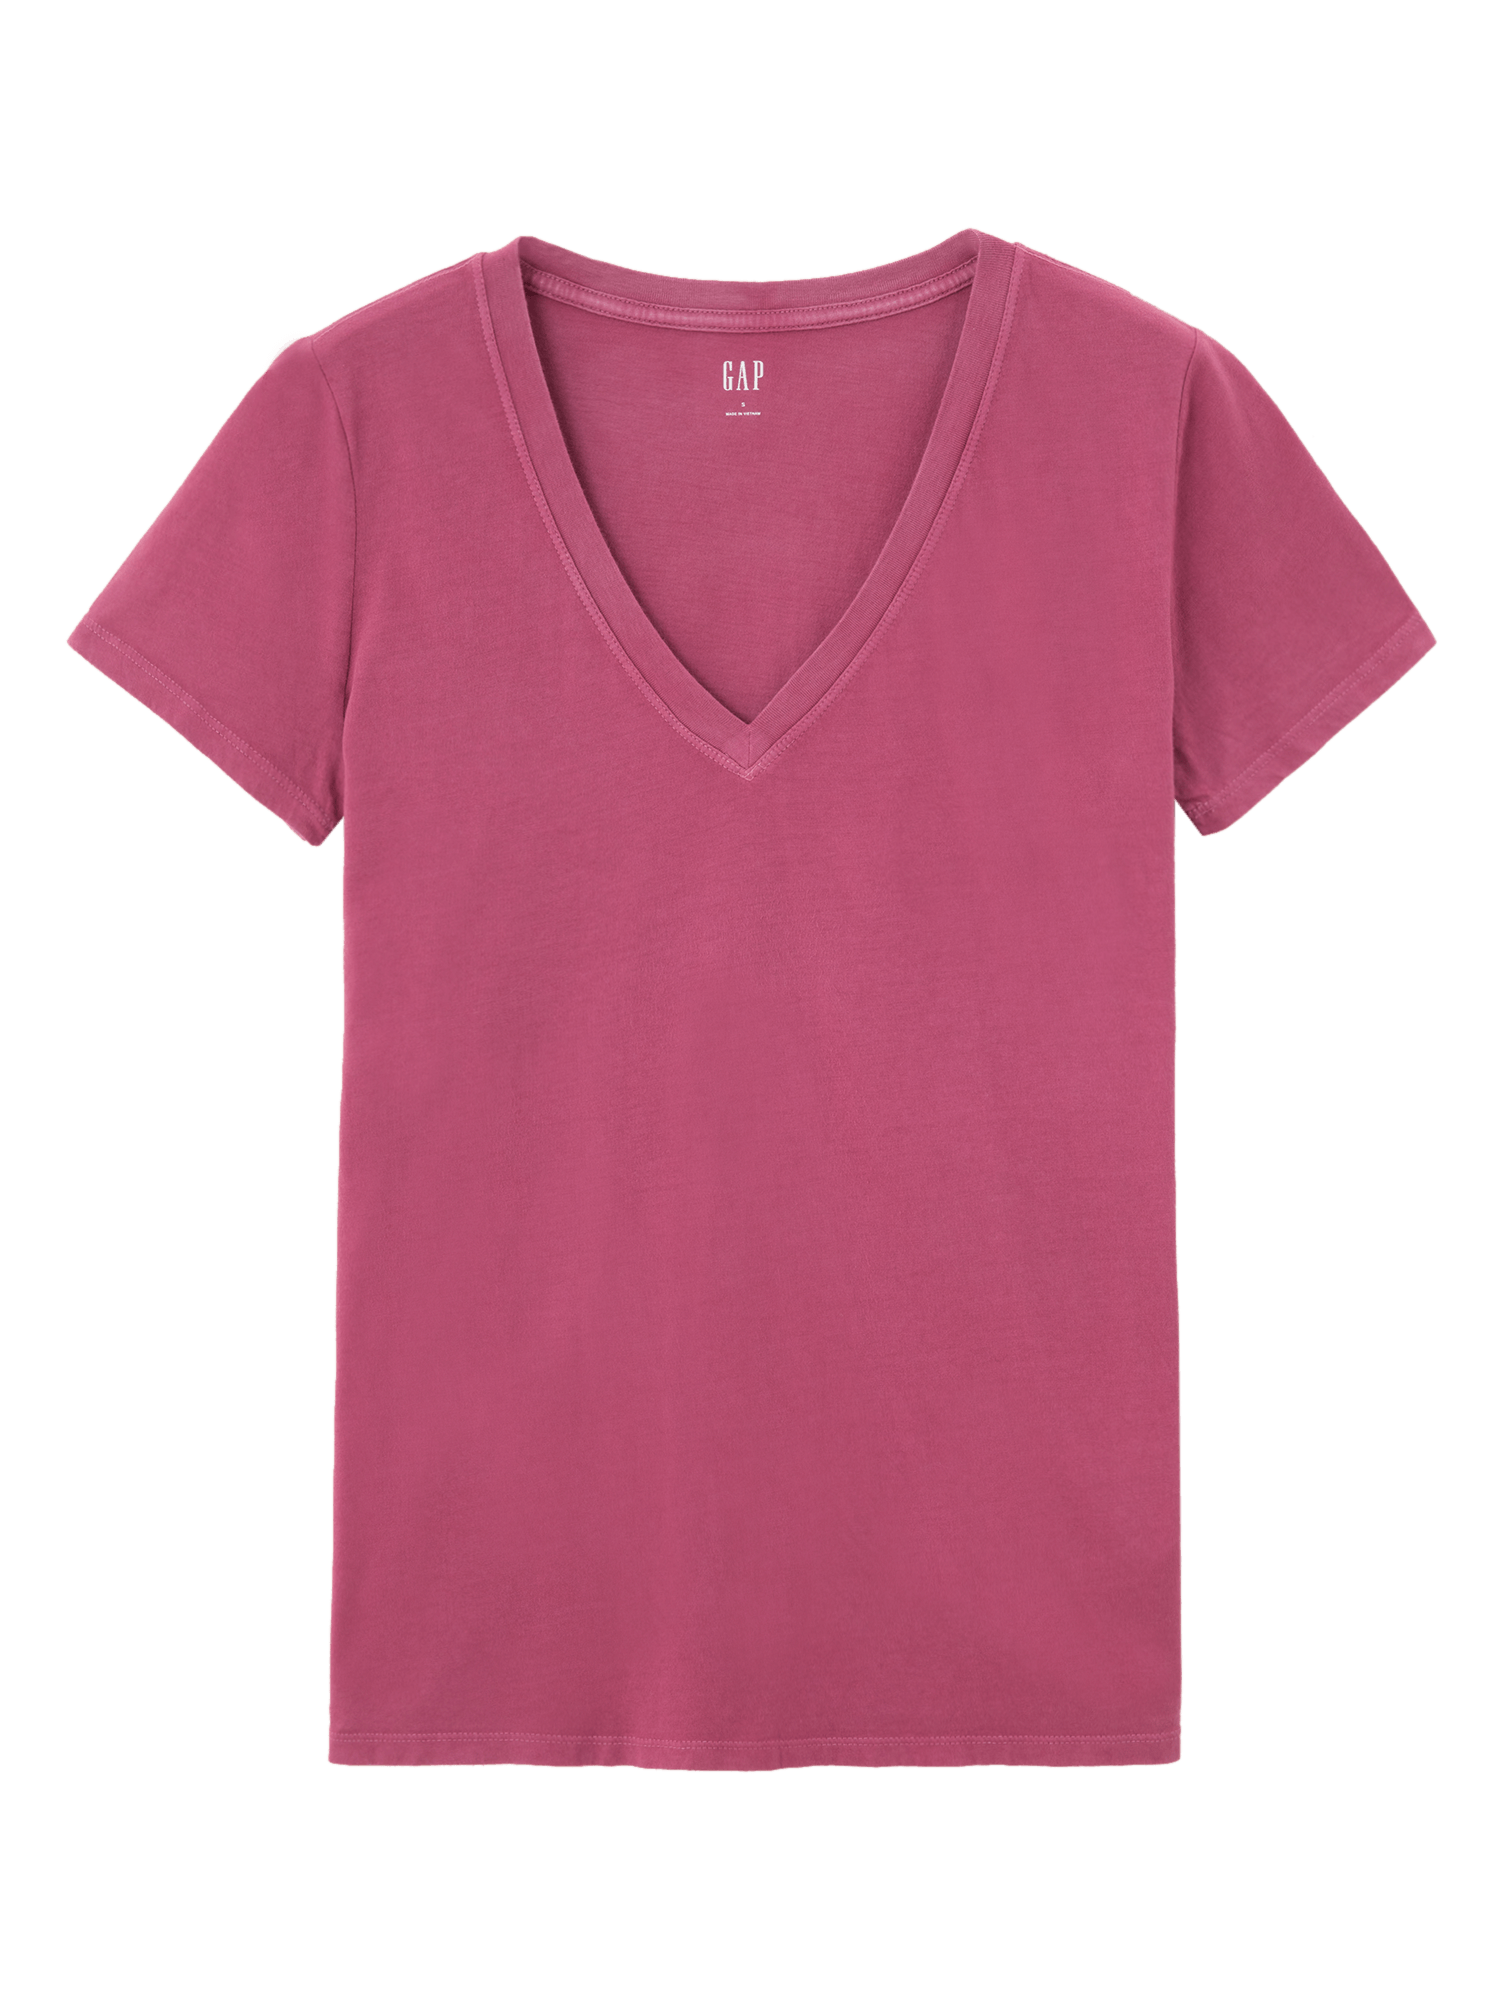 女裝|簡約素色V領短袖T恤-混色玫瑰紅